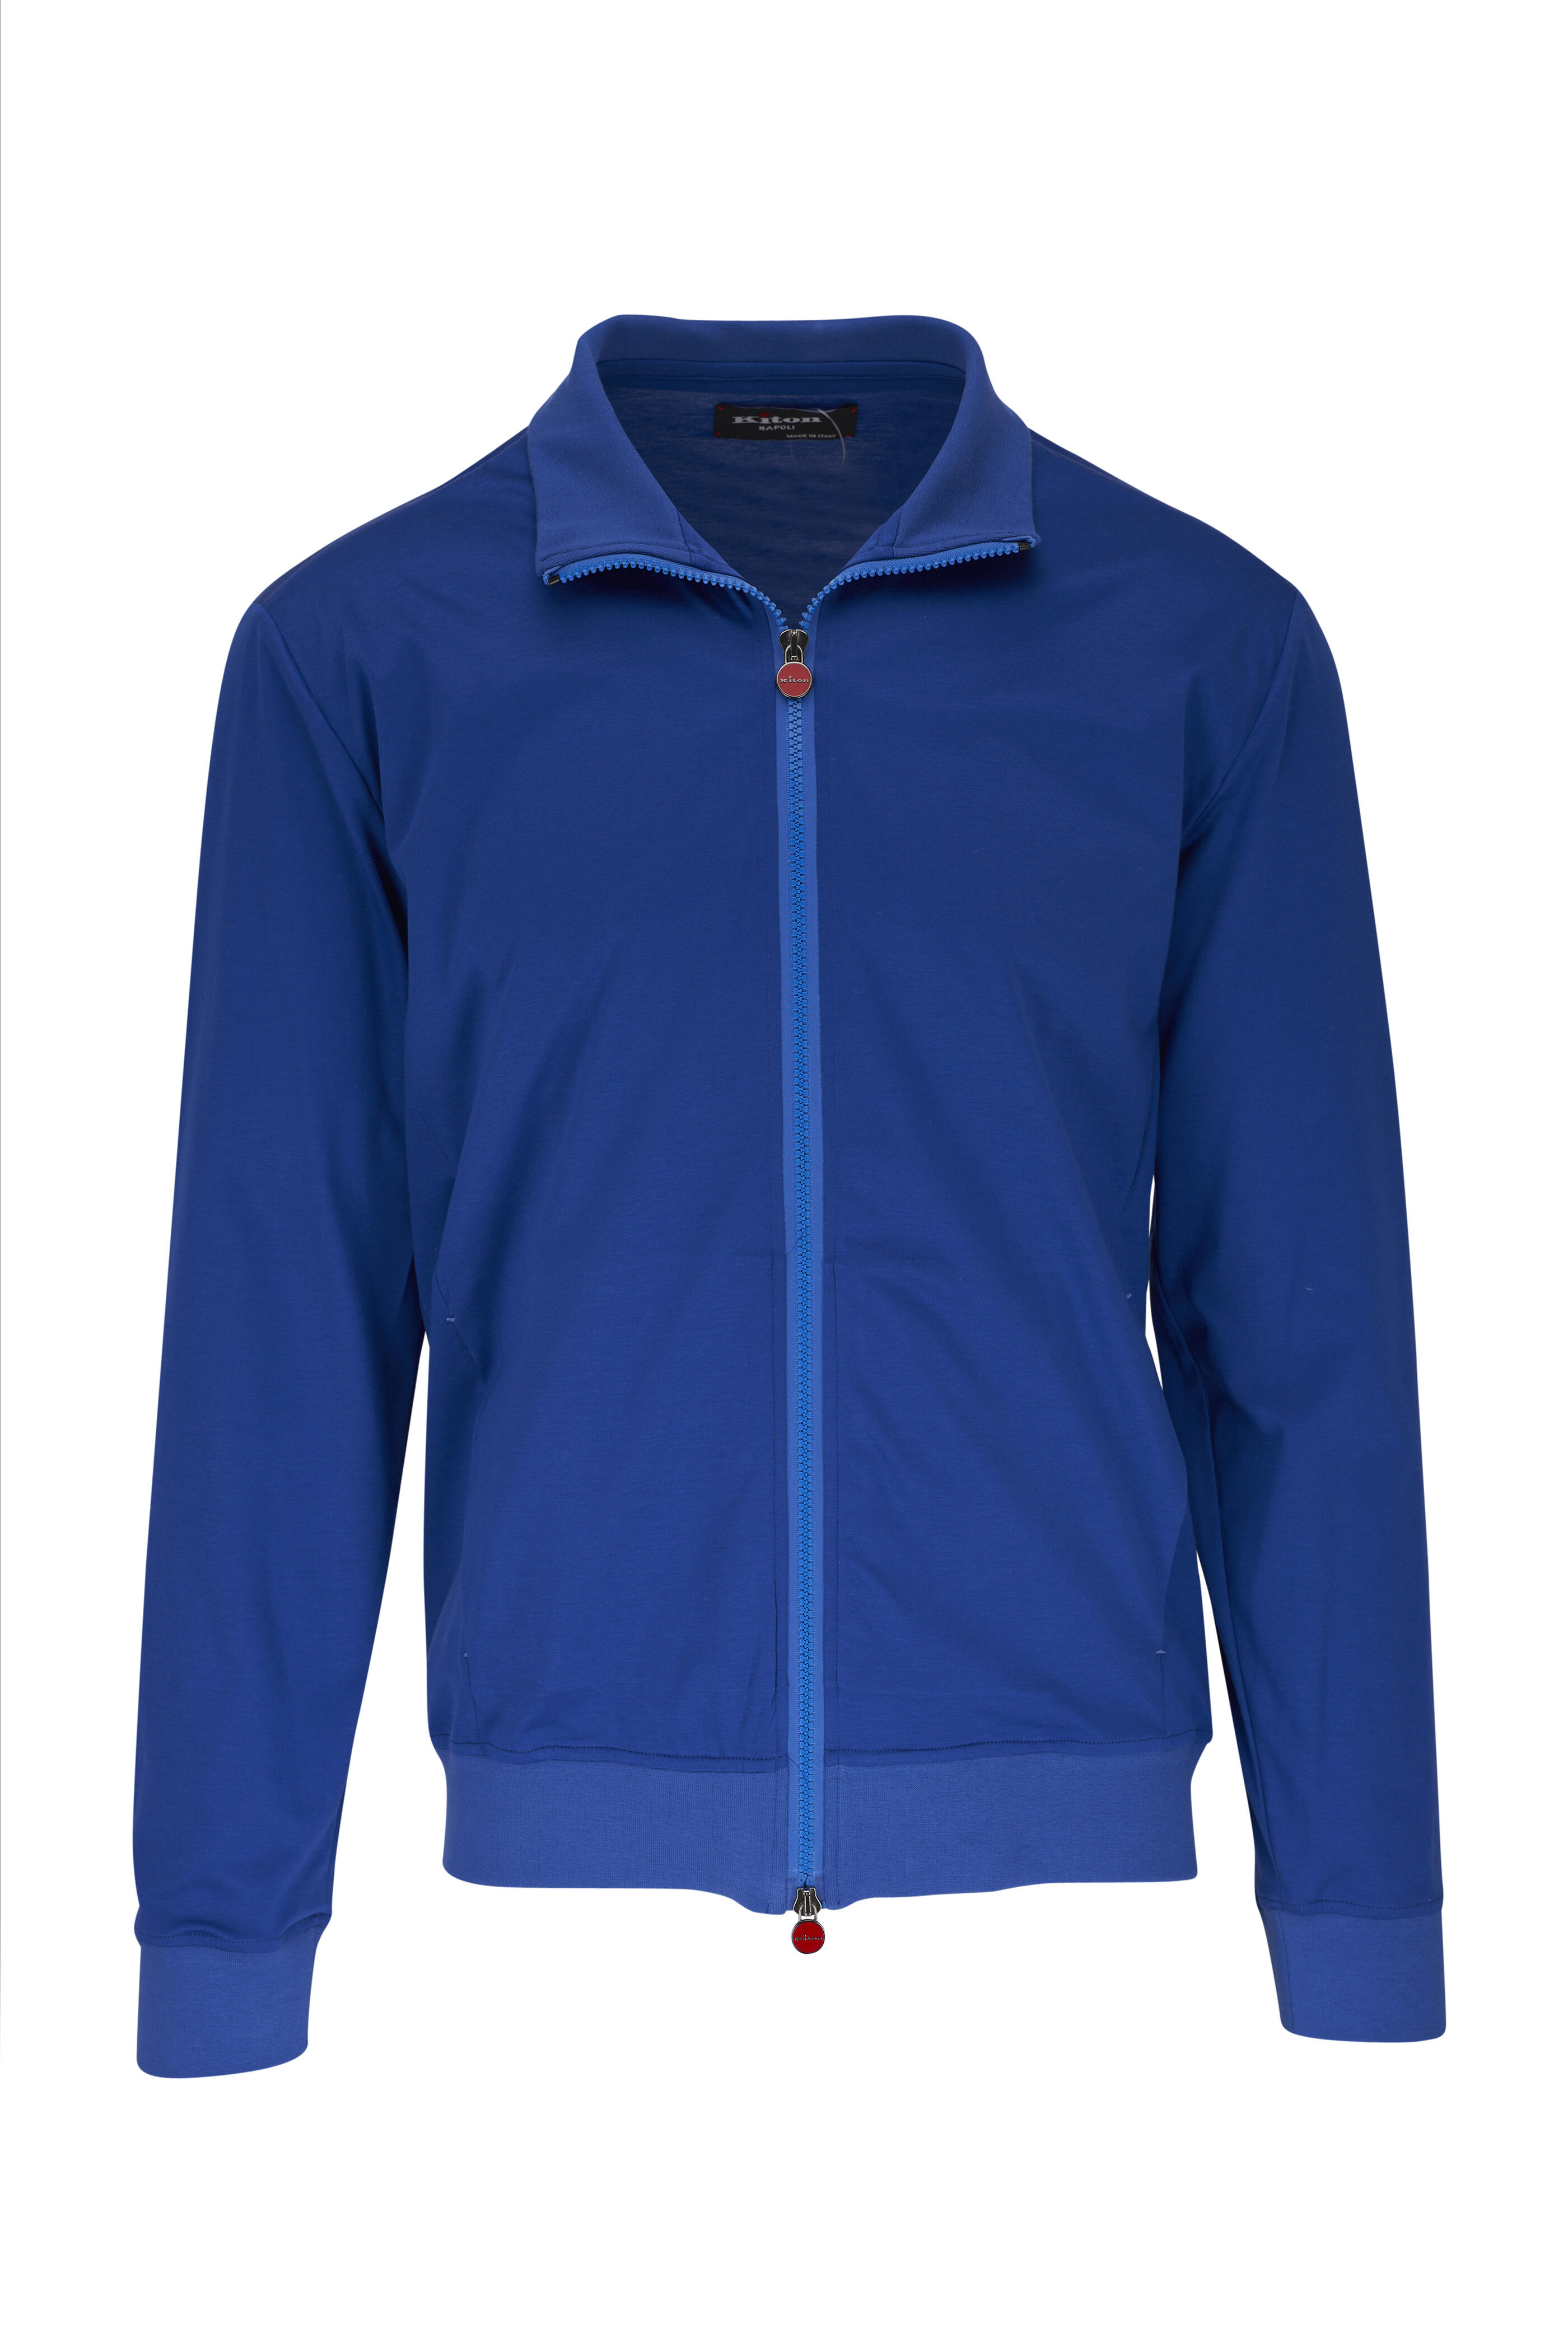 Kiton - Cobalt Blue Jersey Cotton Full Zip Jacket